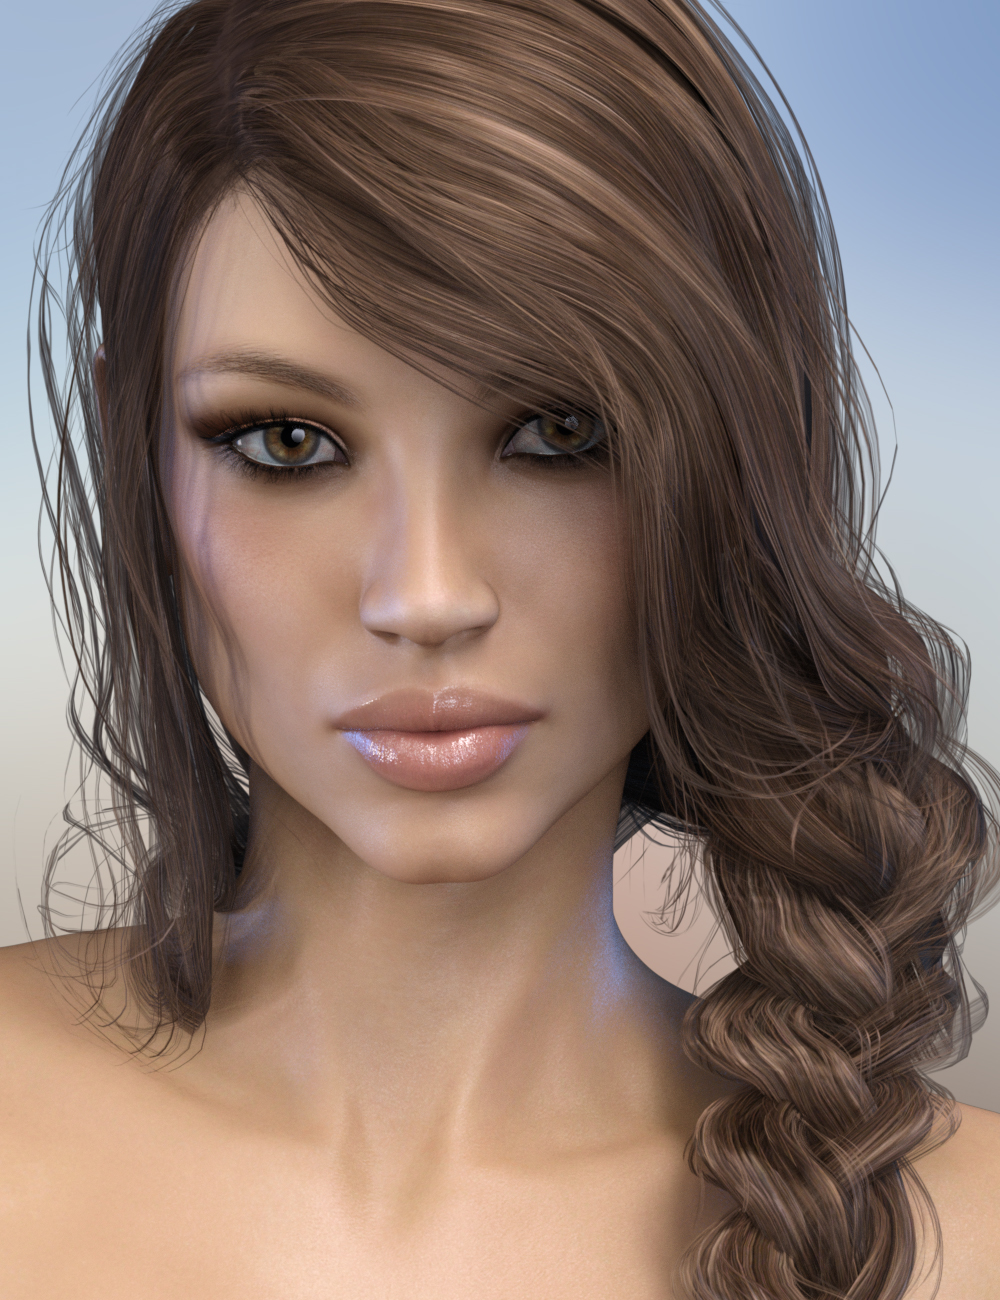 FWSA Jenna HD for Ophelia 7 by: Fred Winkler ArtSabby, 3D Models by Daz 3D